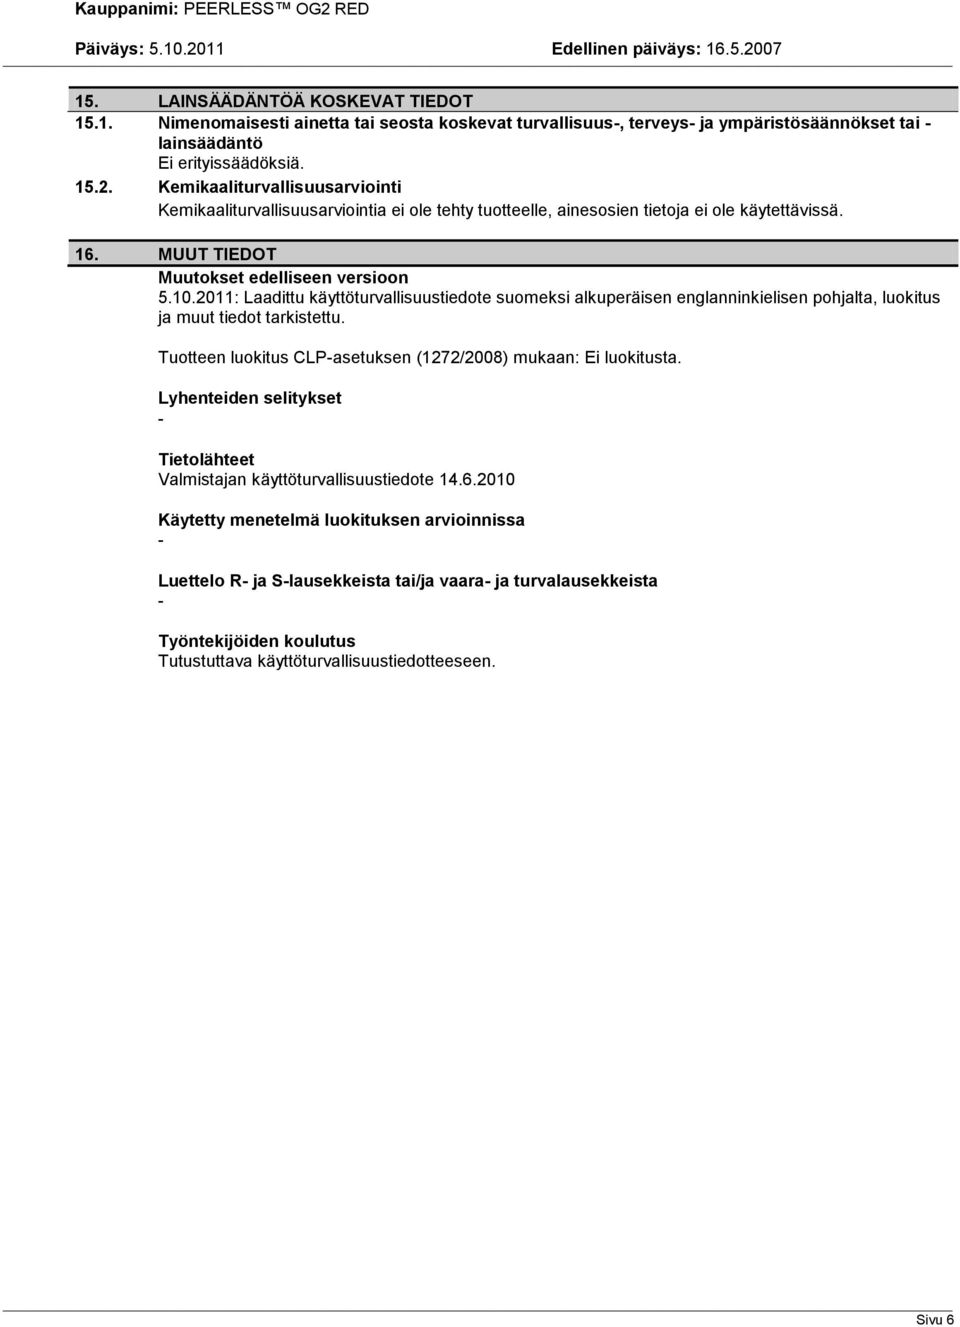 2011: Laadittu käyttöturvallisuustiedote suomeksi alkuperäisen englanninkielisen pohjalta, luokitus ja muut tiedot tarkistettu. Tuotteen luokitus CLPasetuksen (1272/2008) mukaan: Ei luokitusta.